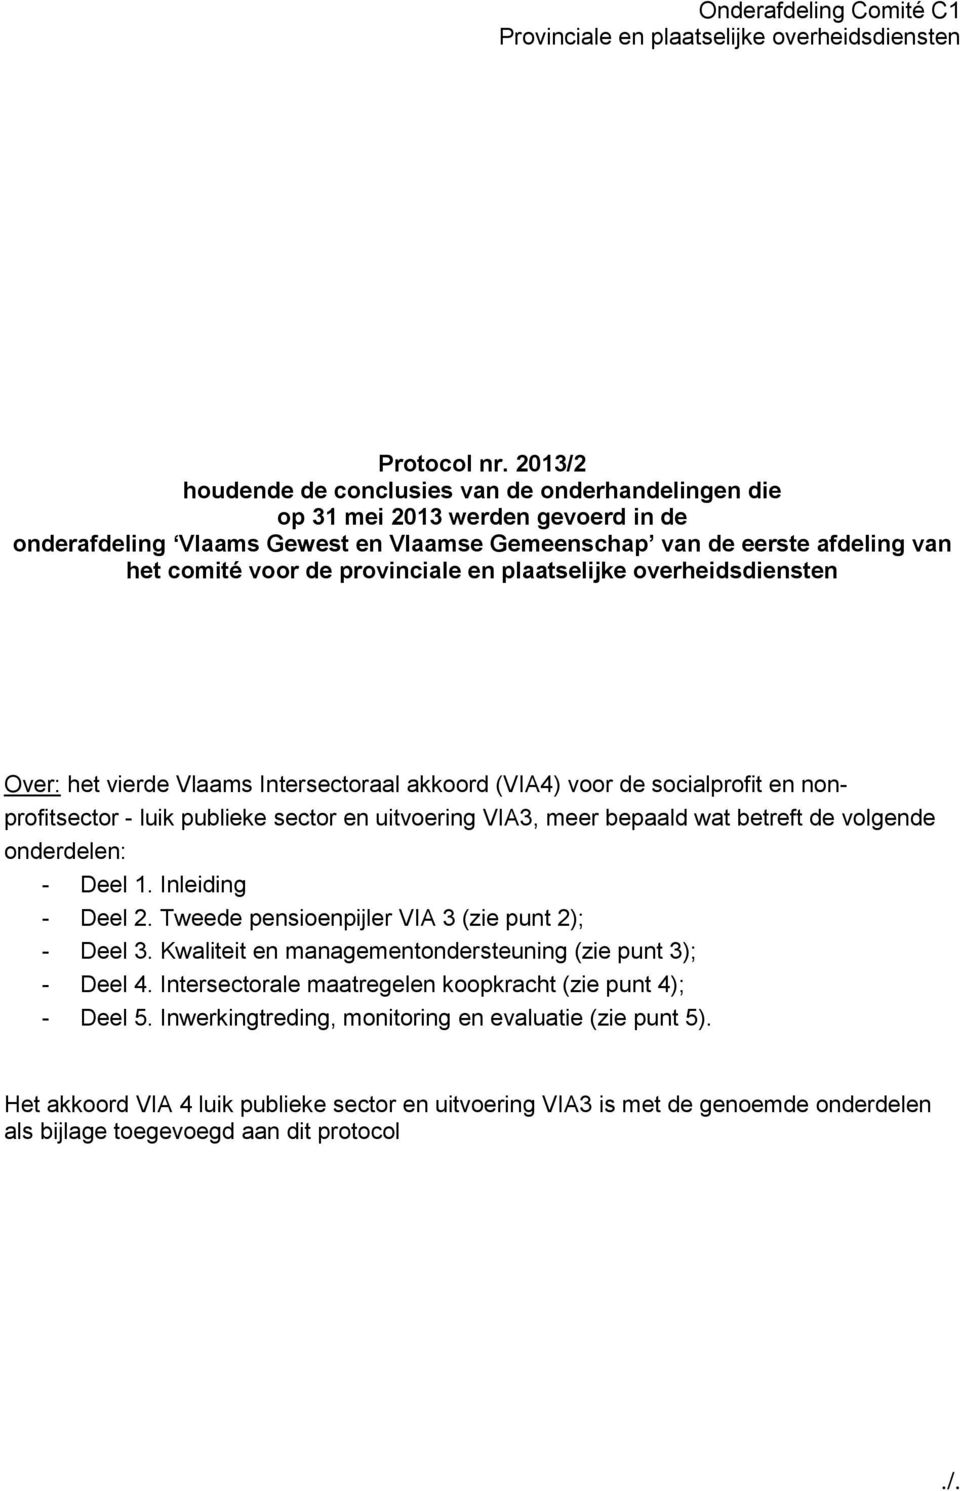 provinciale en plaatselijke overheidsdiensten Over: het vierde Vlaams Intersectoraal akkoord (VIA4) voor de socialprofit en nonprofitsector - luik publieke sector en uitvoering VIA3, meer bepaald wat